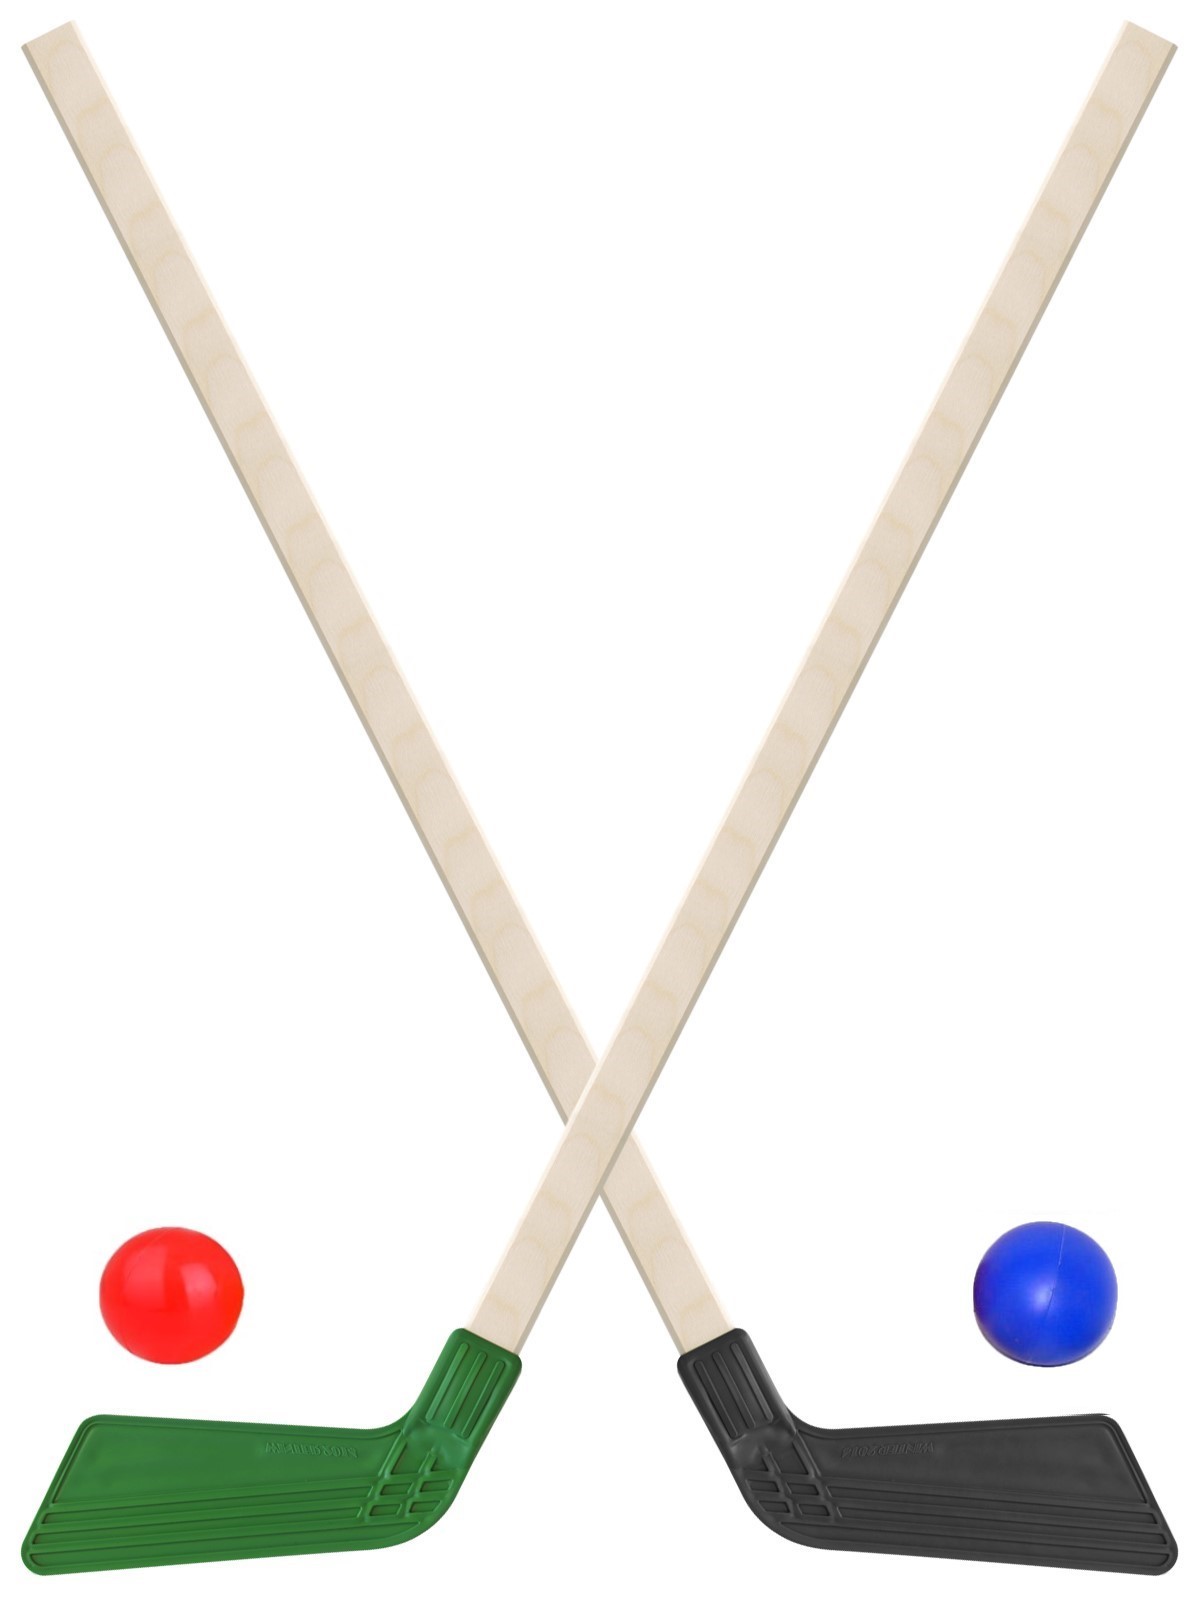 Детский хоккейный набор Задира-плюс Клюшка хоккейная детская 2шт (черная+зеленая) +2 мяча